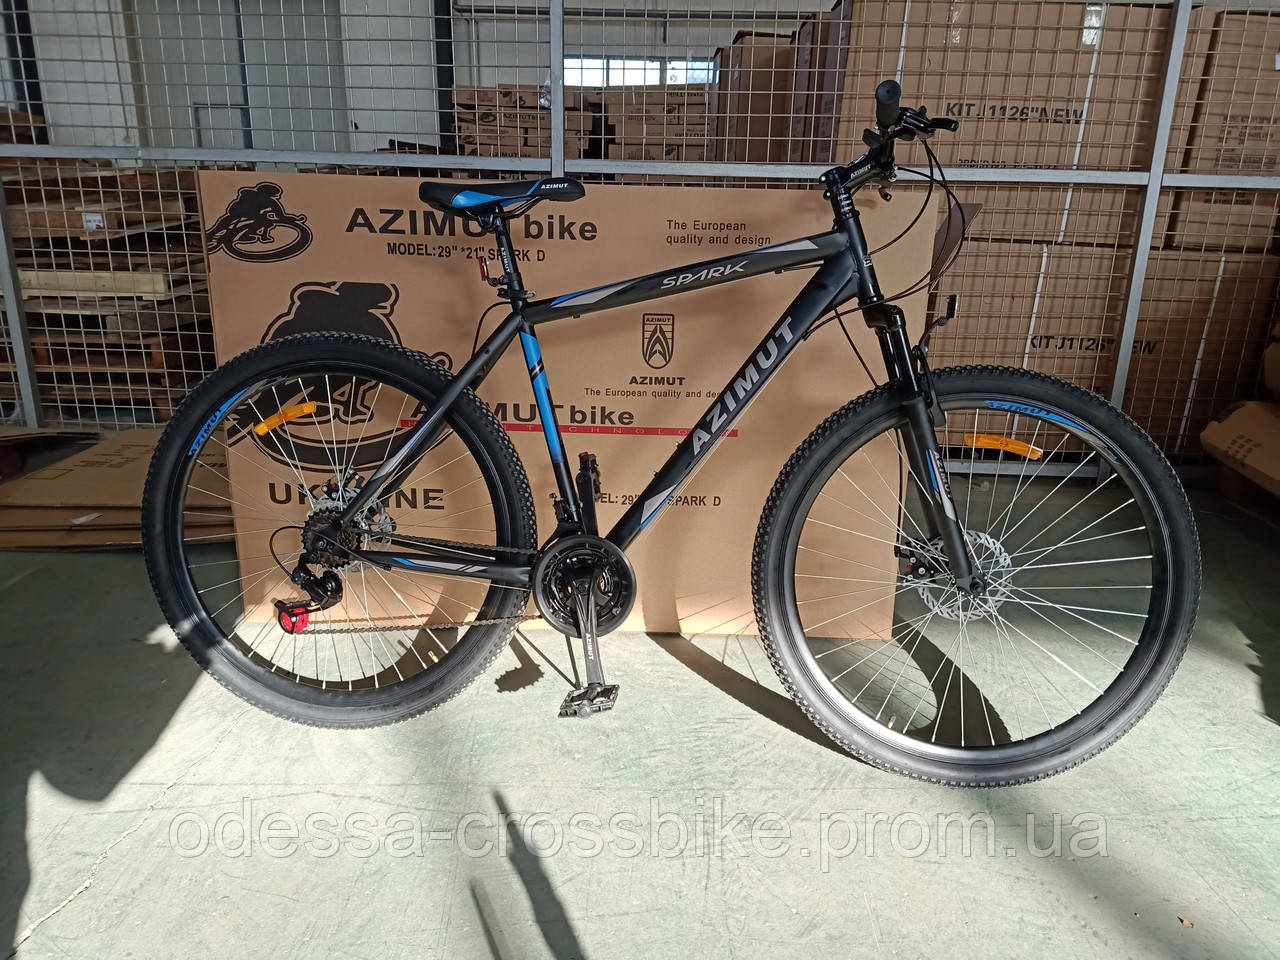 Велосипед рама 21 дюйм. Spark велосипед 29 дюймов. Spark Azimuth велосипед 29 дюймов. Велосипед рама 21 дюйм колеса 29 дюймов. Azimut 29 колеса рама 19.